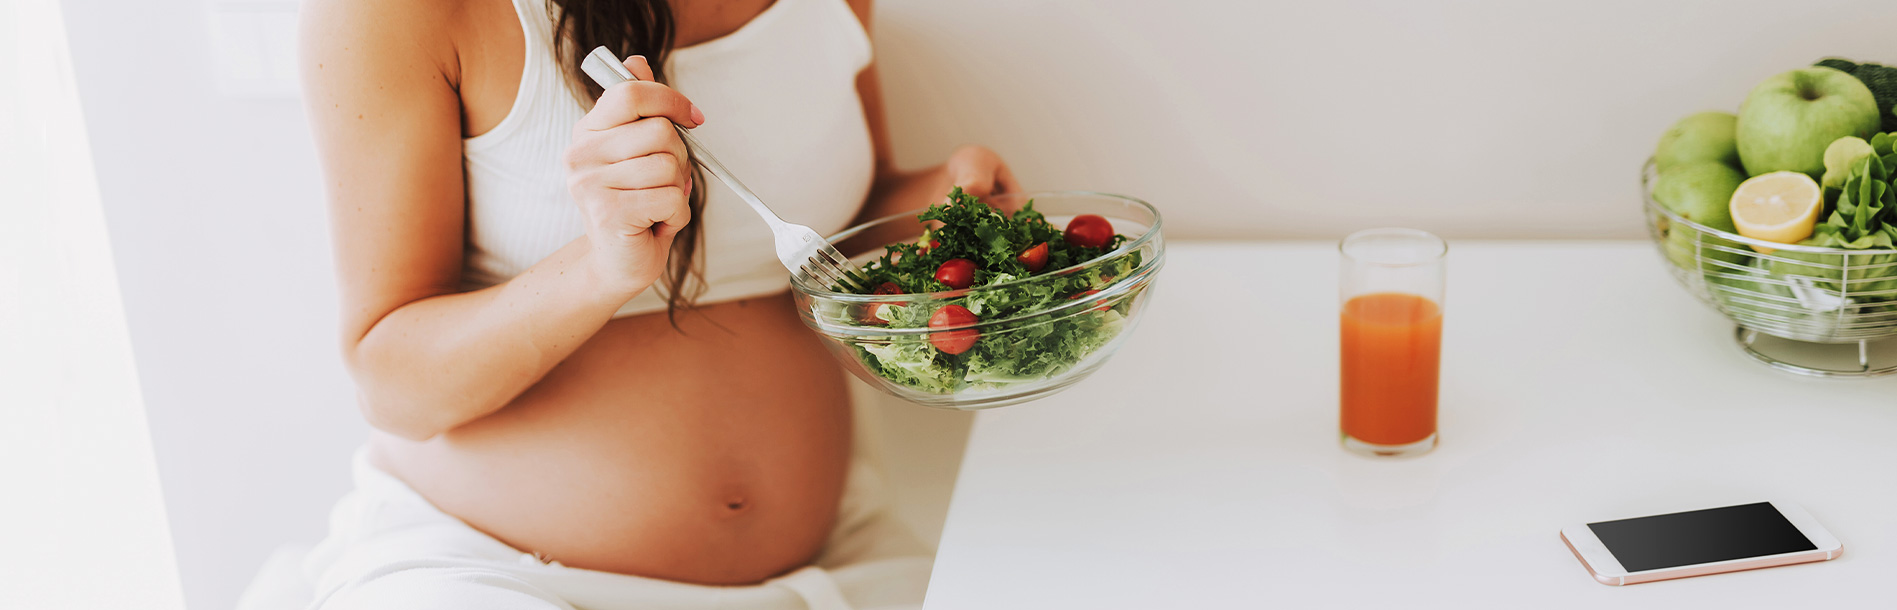 Saúde da grávida: 13 cuidados importantes na ingestão de alimentos e medicamentos